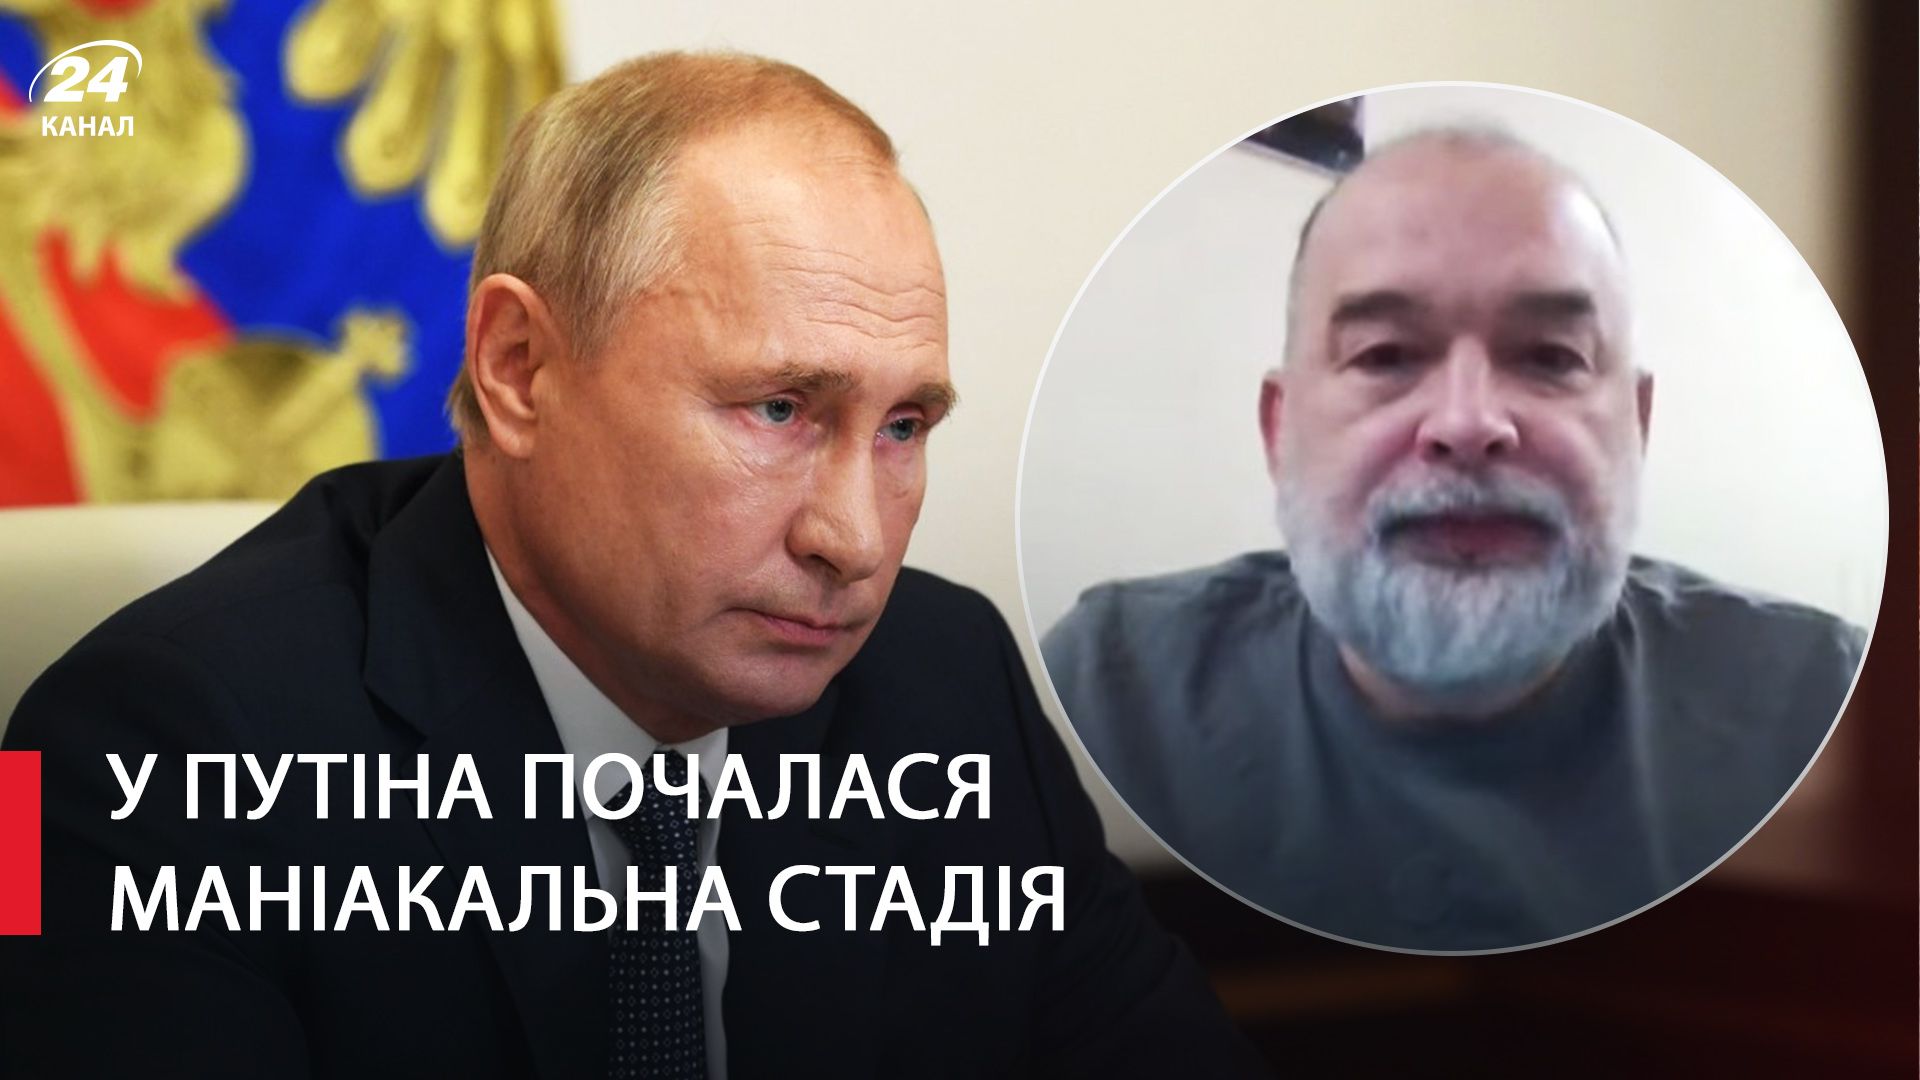 Шейтельман прокомментировал заявления Путина